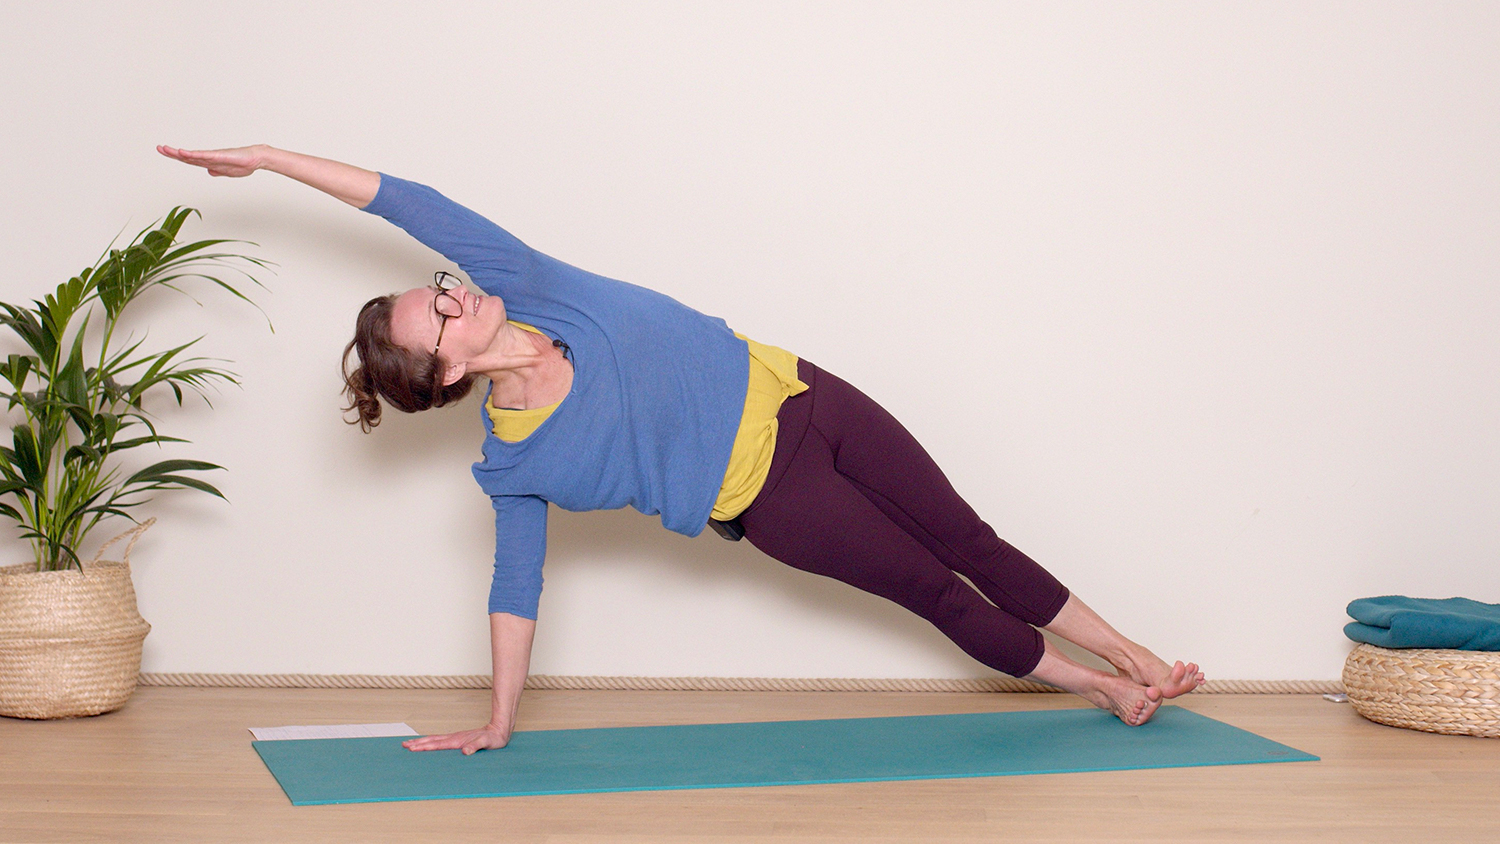 Une pratique complète pour se dynamiser | Cours de yoga en ligne avec Delphine Denis | Hatha Yoga dynamique